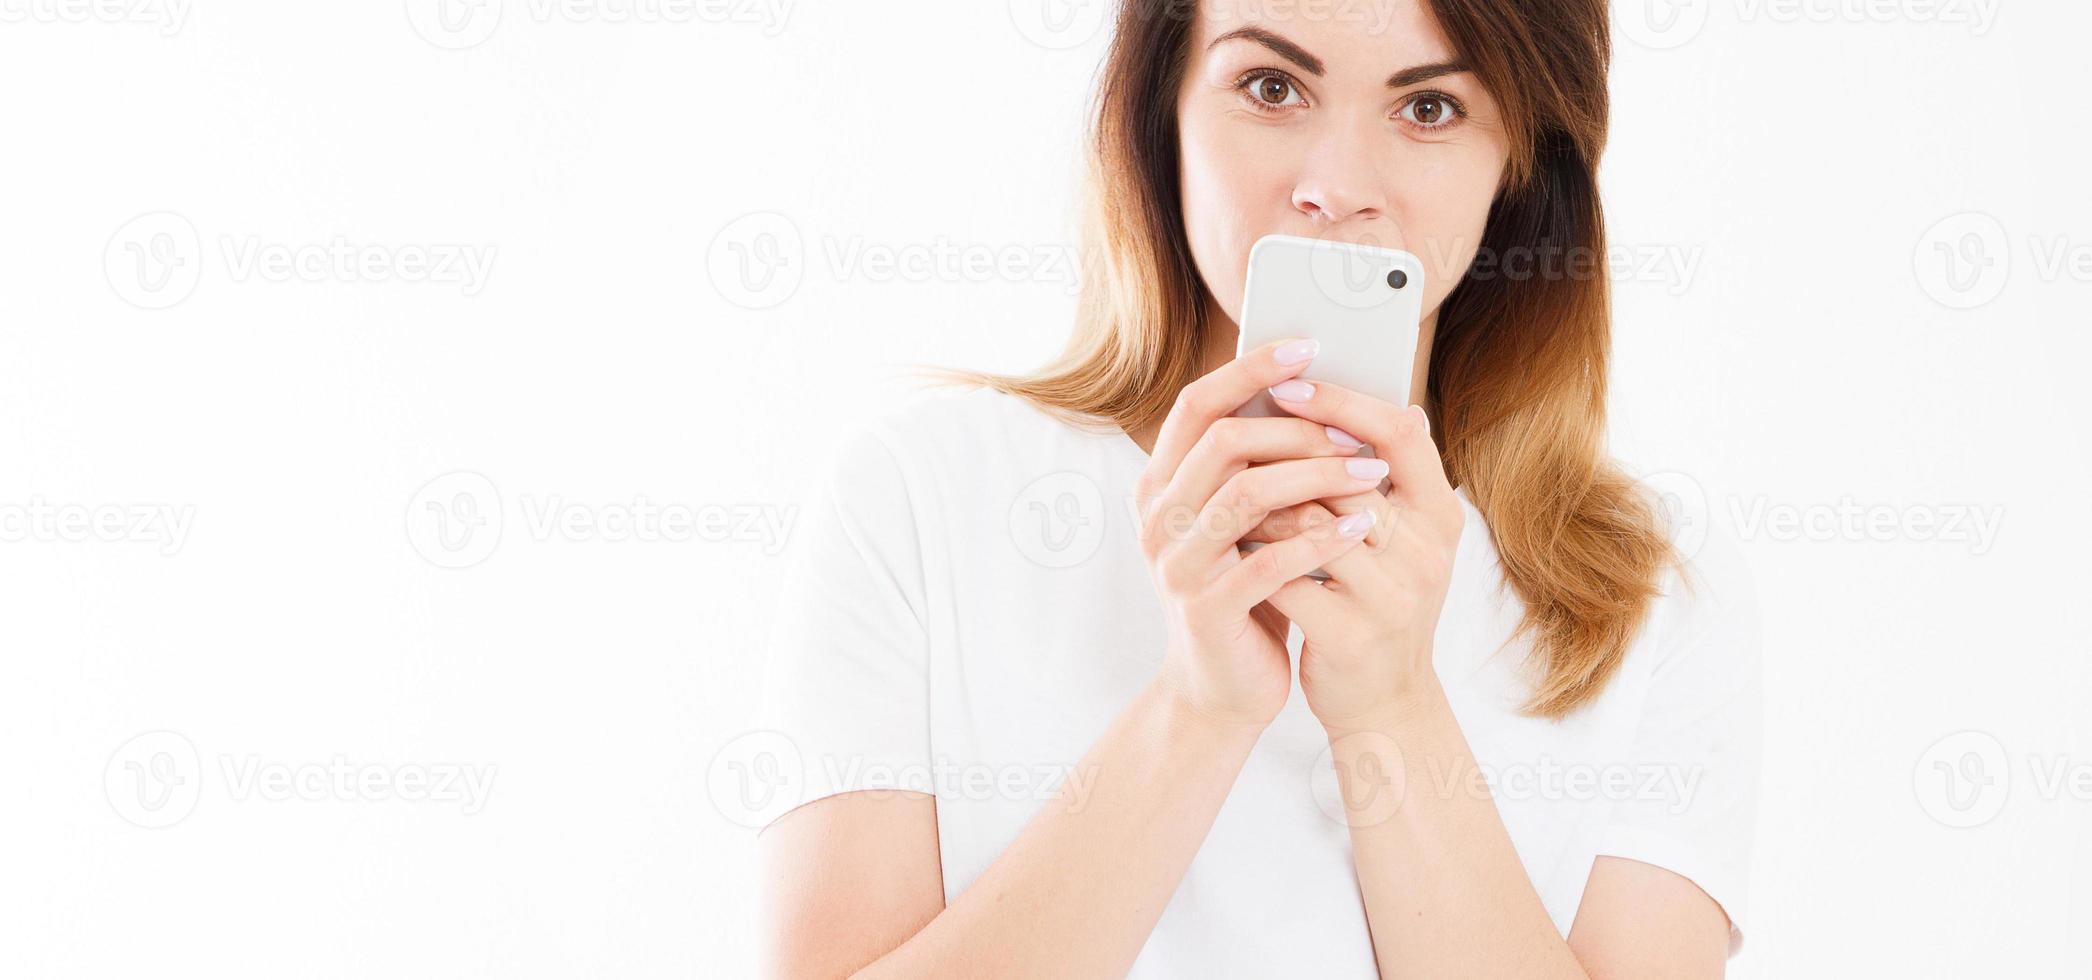 Retrato recortado de una mujer joven sonriente sosteniendo un teléfono móvil aislado sobre fondo blanco, charlando chica, concepto de publicidad, espacio de copia foto